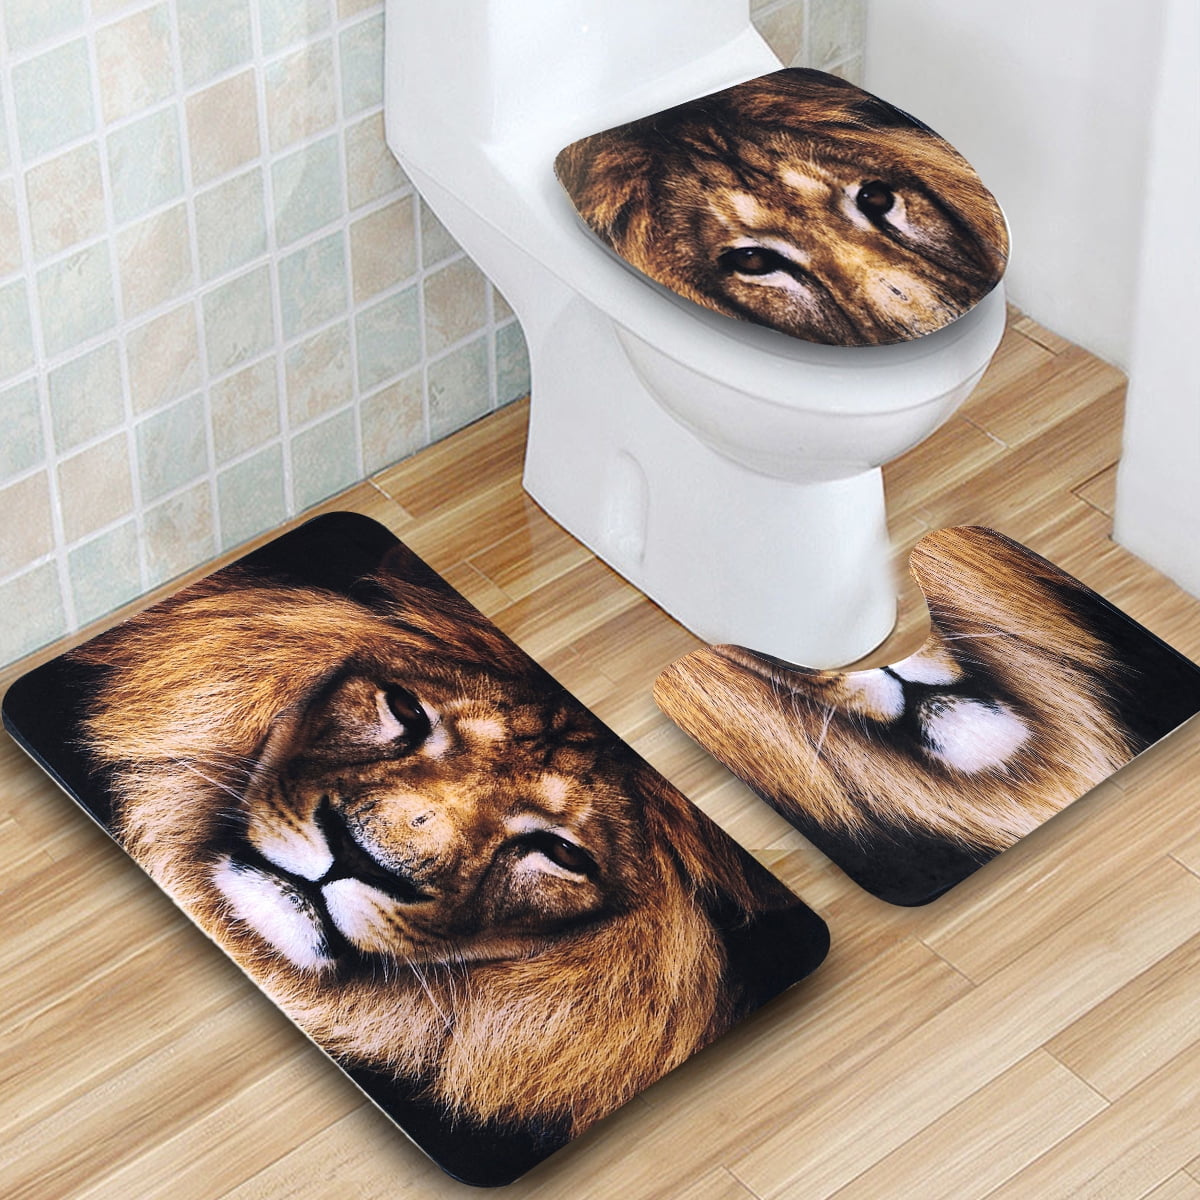 4Pcs/Set Waterproof Lion Shower Curtain Bathroom Toilet Seat Mat Bath Cover 